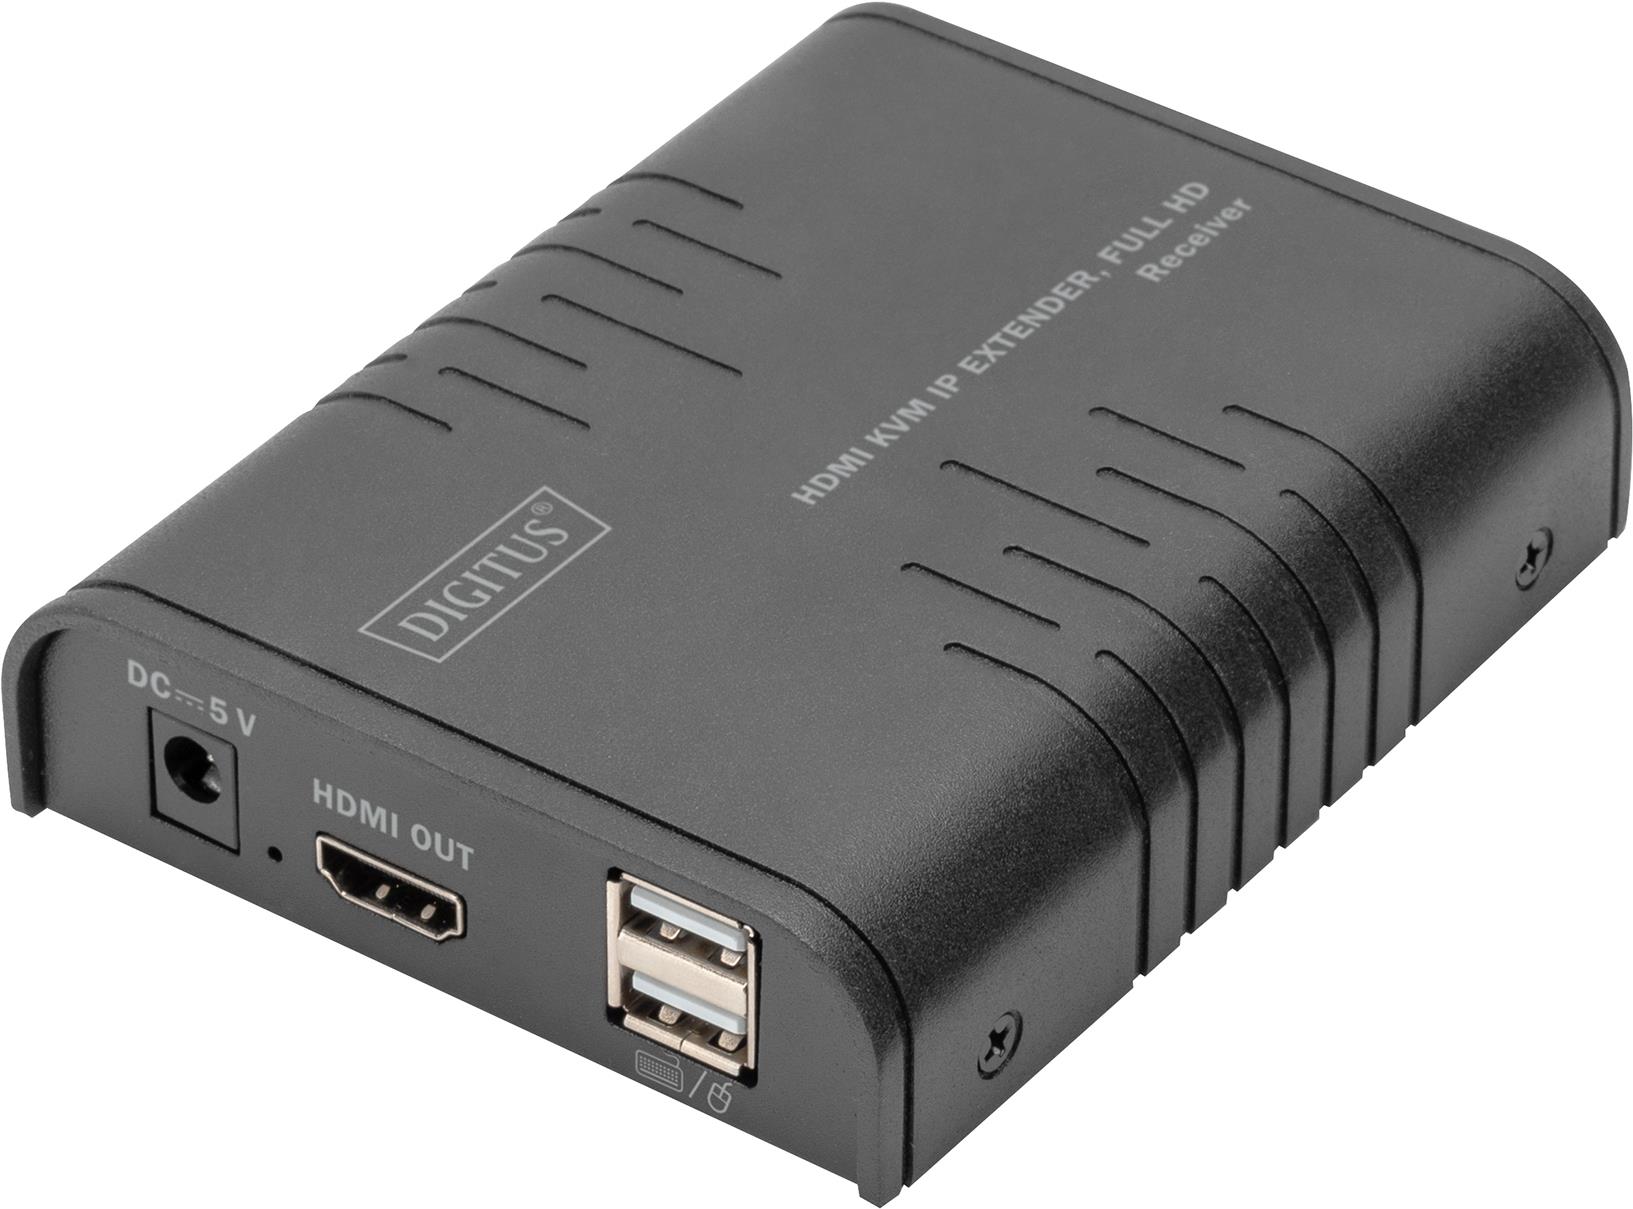 Digitus HDMI KVM IP Extender Receiver, Full HD. Typ: Receiver, Übertragungstechnik: Kabelgebunden, Maximal mögliche Übertragungsstrecke: 120 m. Empfänger lokaler Video-Anschlusstyp: HDMI, Empfänger lokale Tastatur/Maus-Anschlusstyp: USB. Eingangsstrom: 1 A, Stromverbrauch (Empfänger) (max.): 3,5 W, DC-Spannung: 5 V. Breite des Empfängers: 9 cm, Tiefe des Empfängers: 11 cm, Höhe des Empfängers: 2,7 cm. Verpackungsbreite: 117 mm, Verpackungstiefe: 150 mm, Verpackungshöhe: 77 mm (DS-55530)